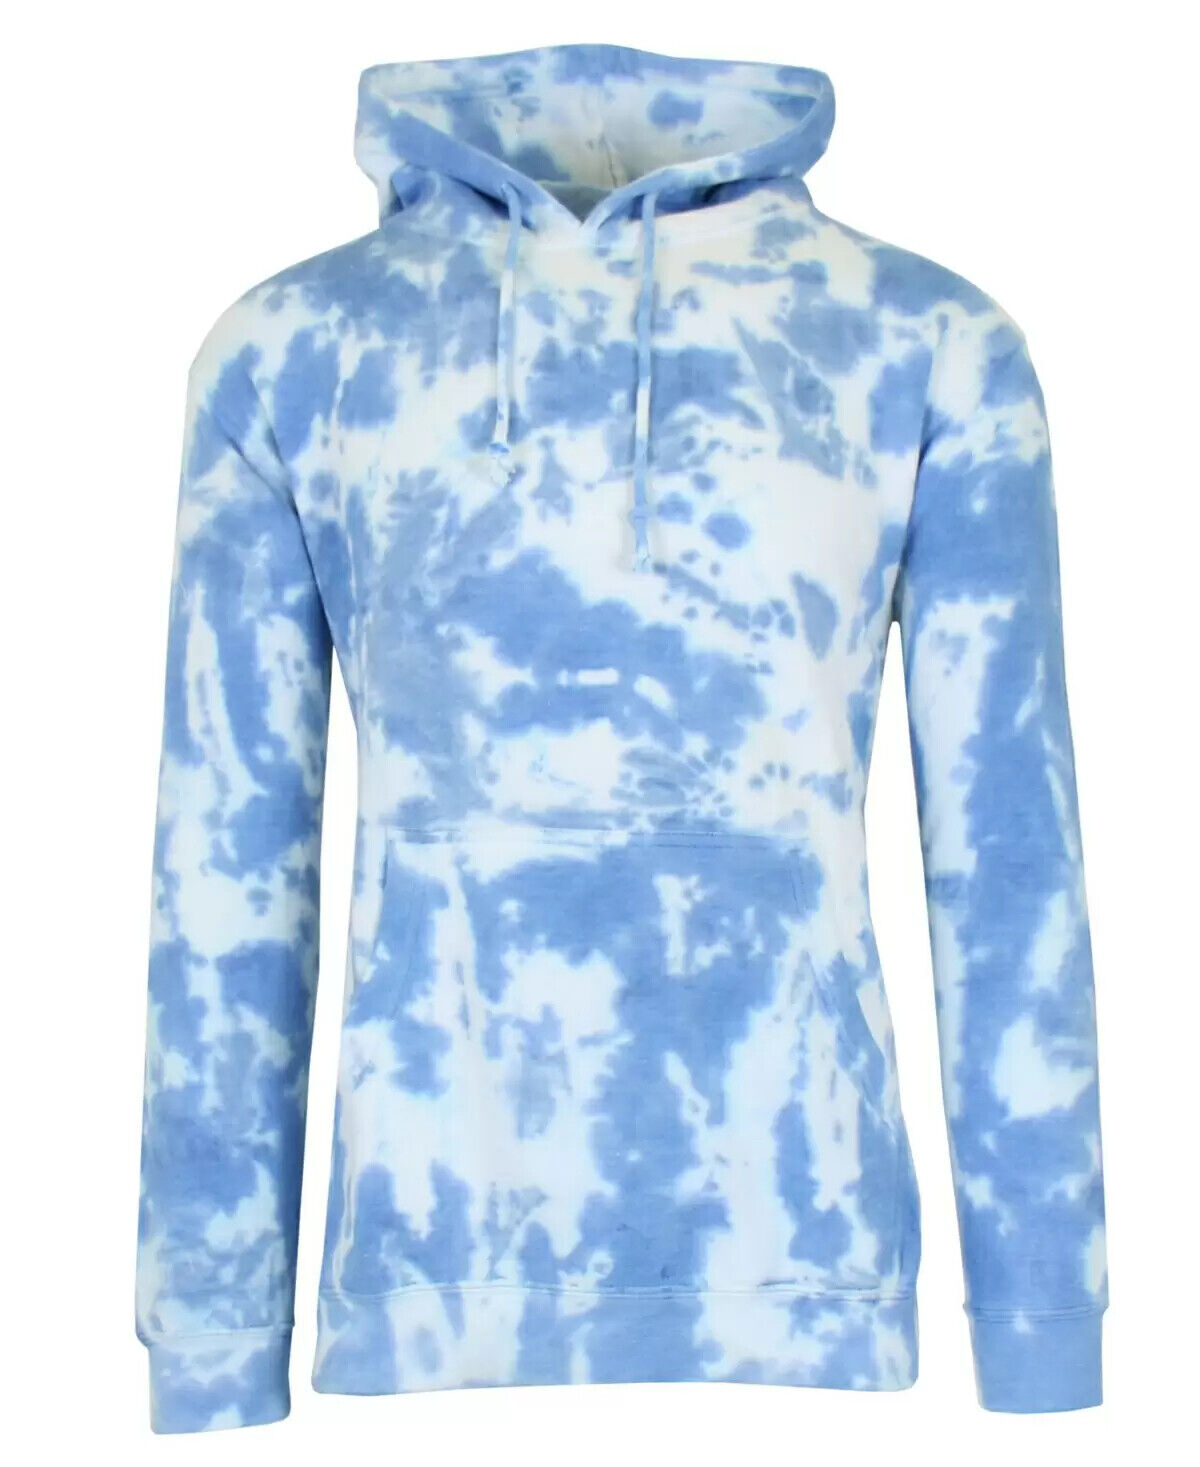 Galaxy By Harvic Tie-dye Fleece Hooded Sweatshirt $49 Size S # 6D 1388 NEW